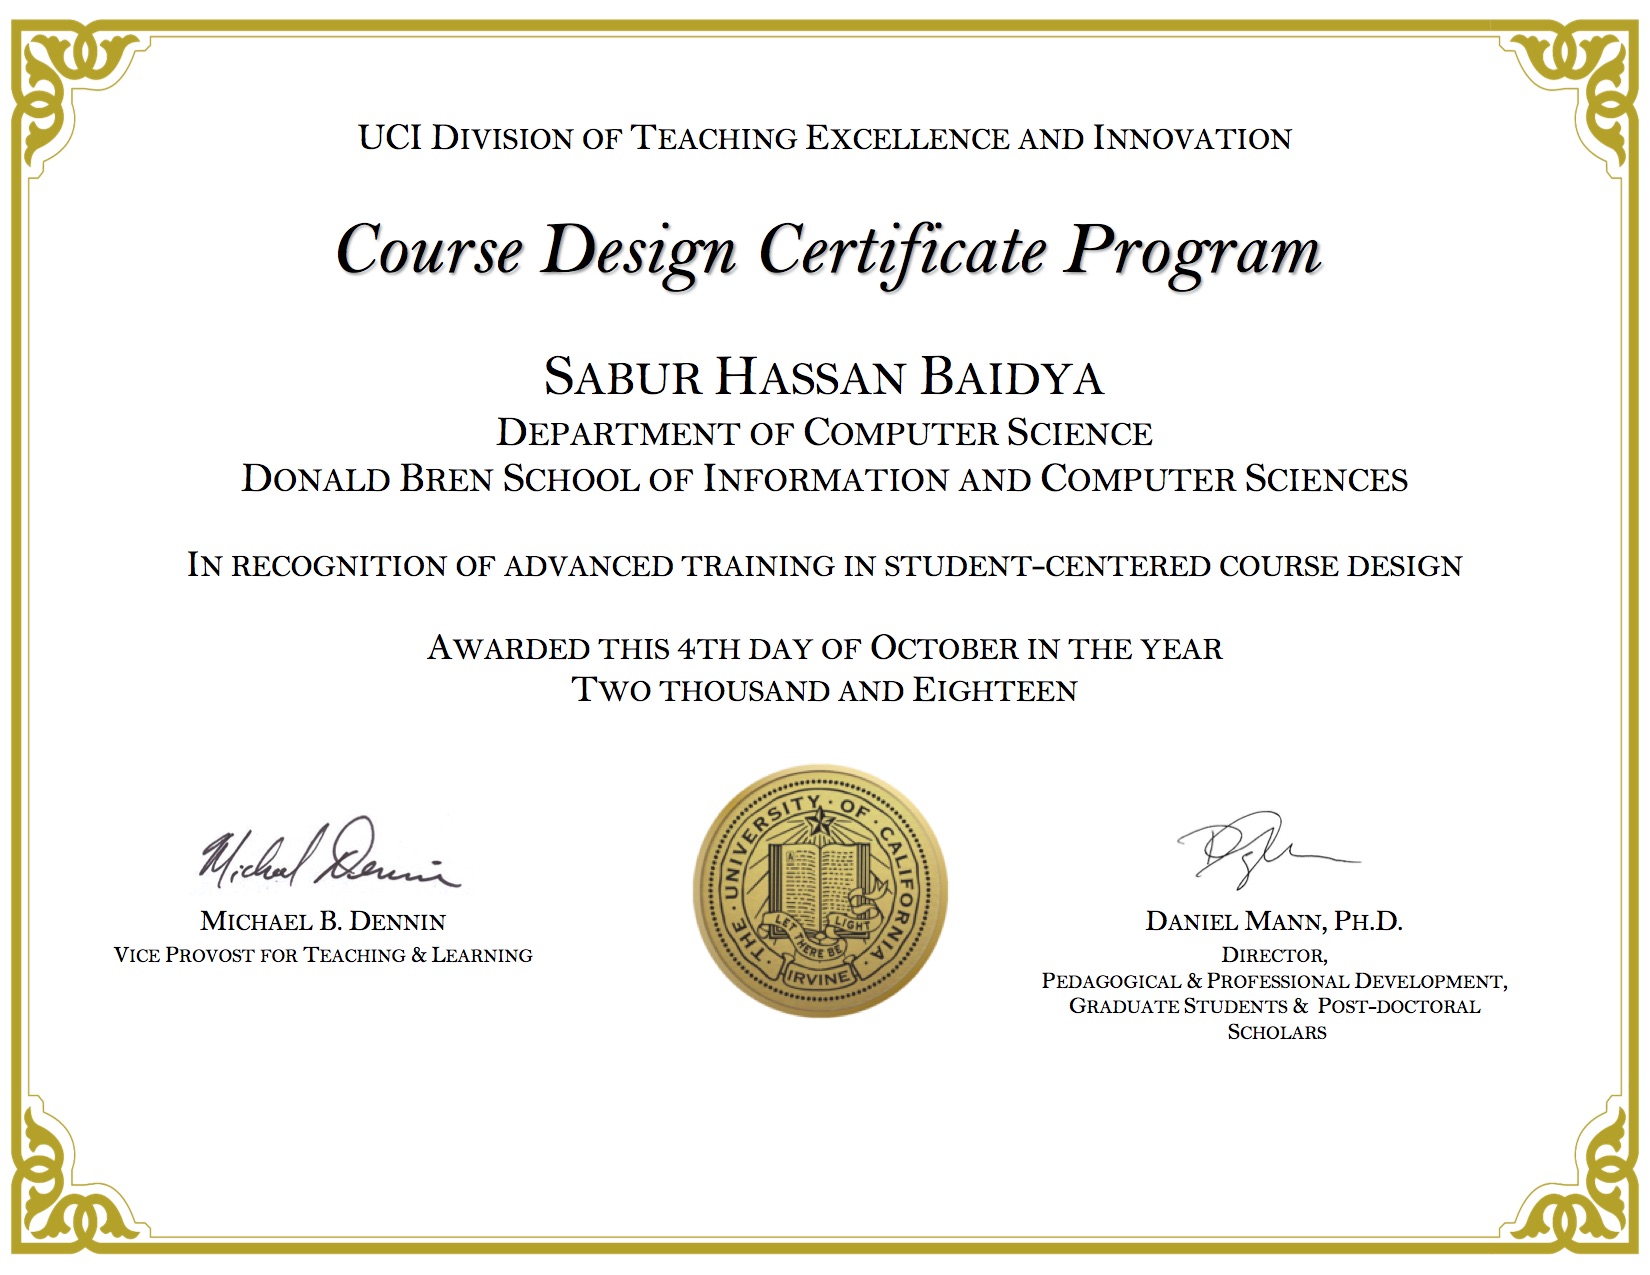 Course Design Certificate